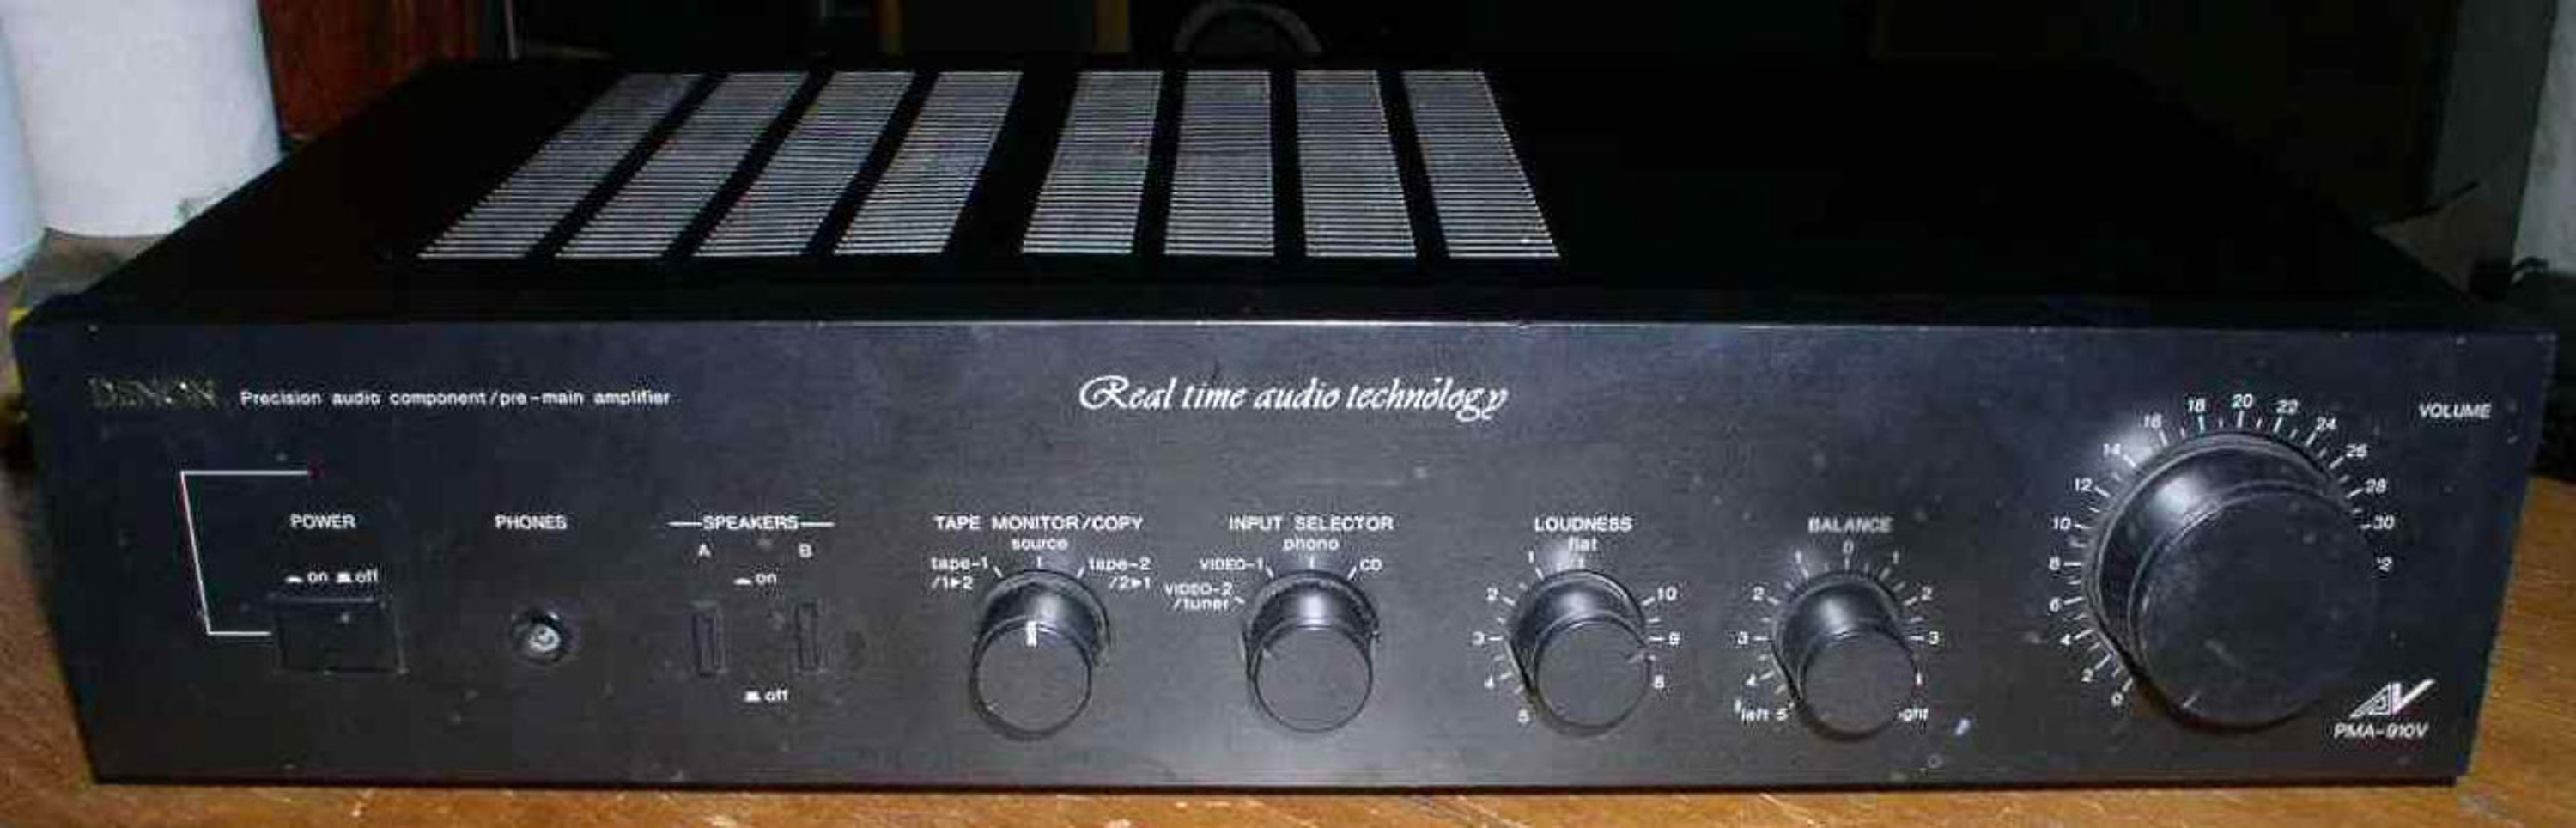 vintage Hi-Fi integrated amplifier Denon PMA-910V